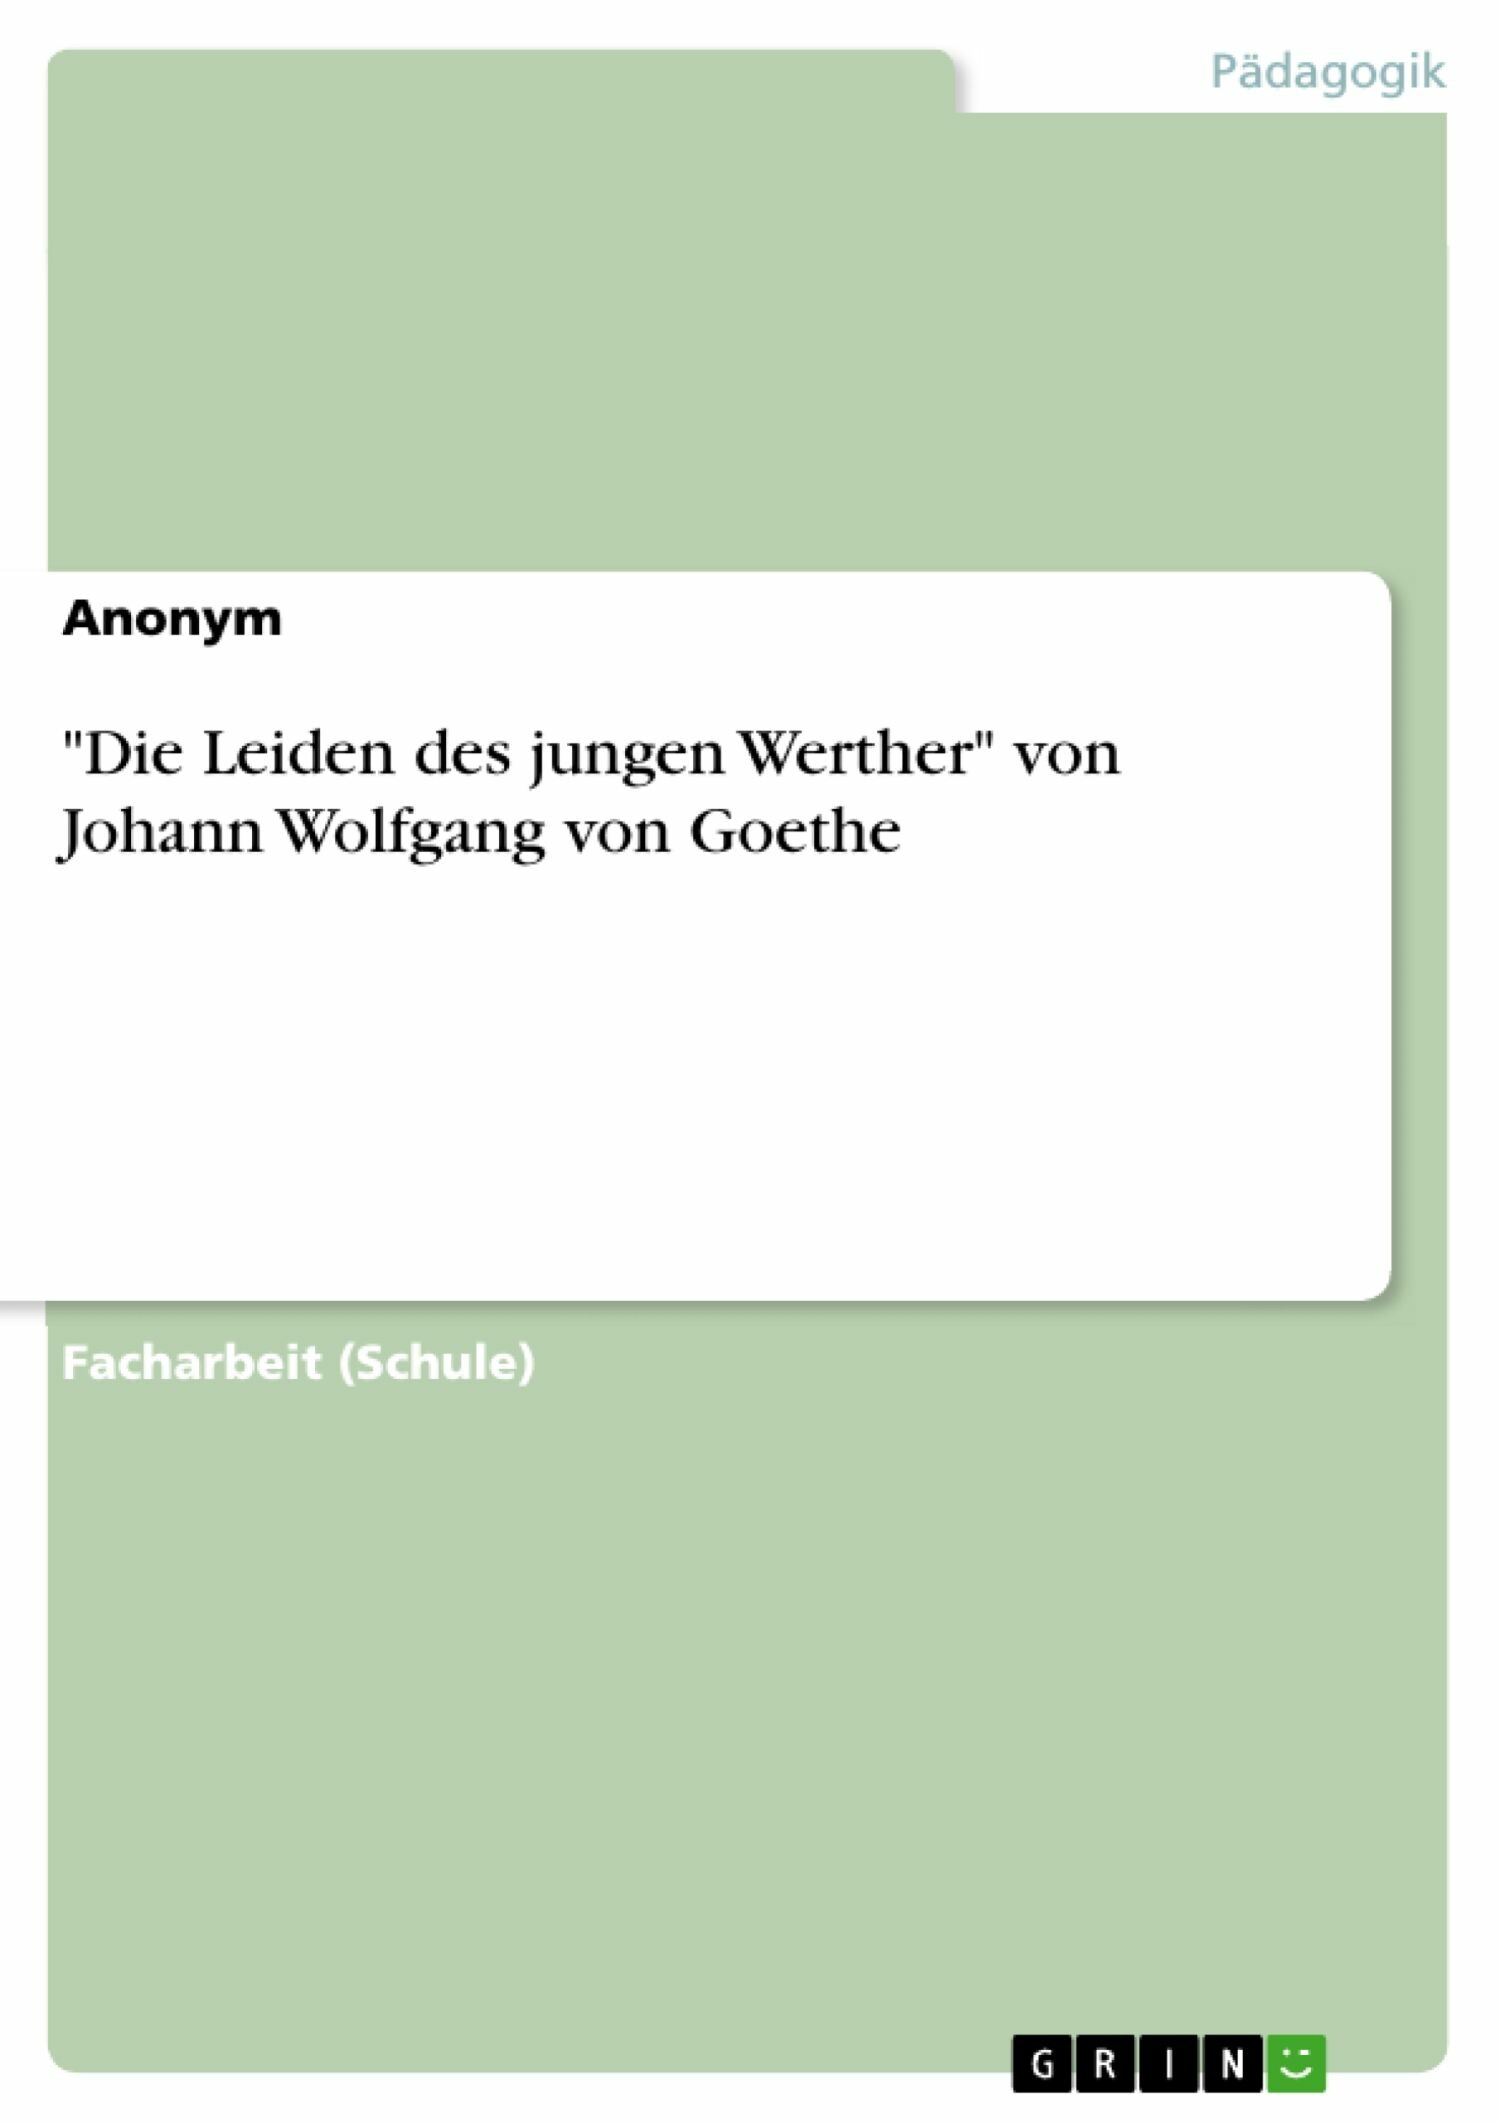 'Die Leiden des jungen Werther' von Johann Wolfgang von Goethe